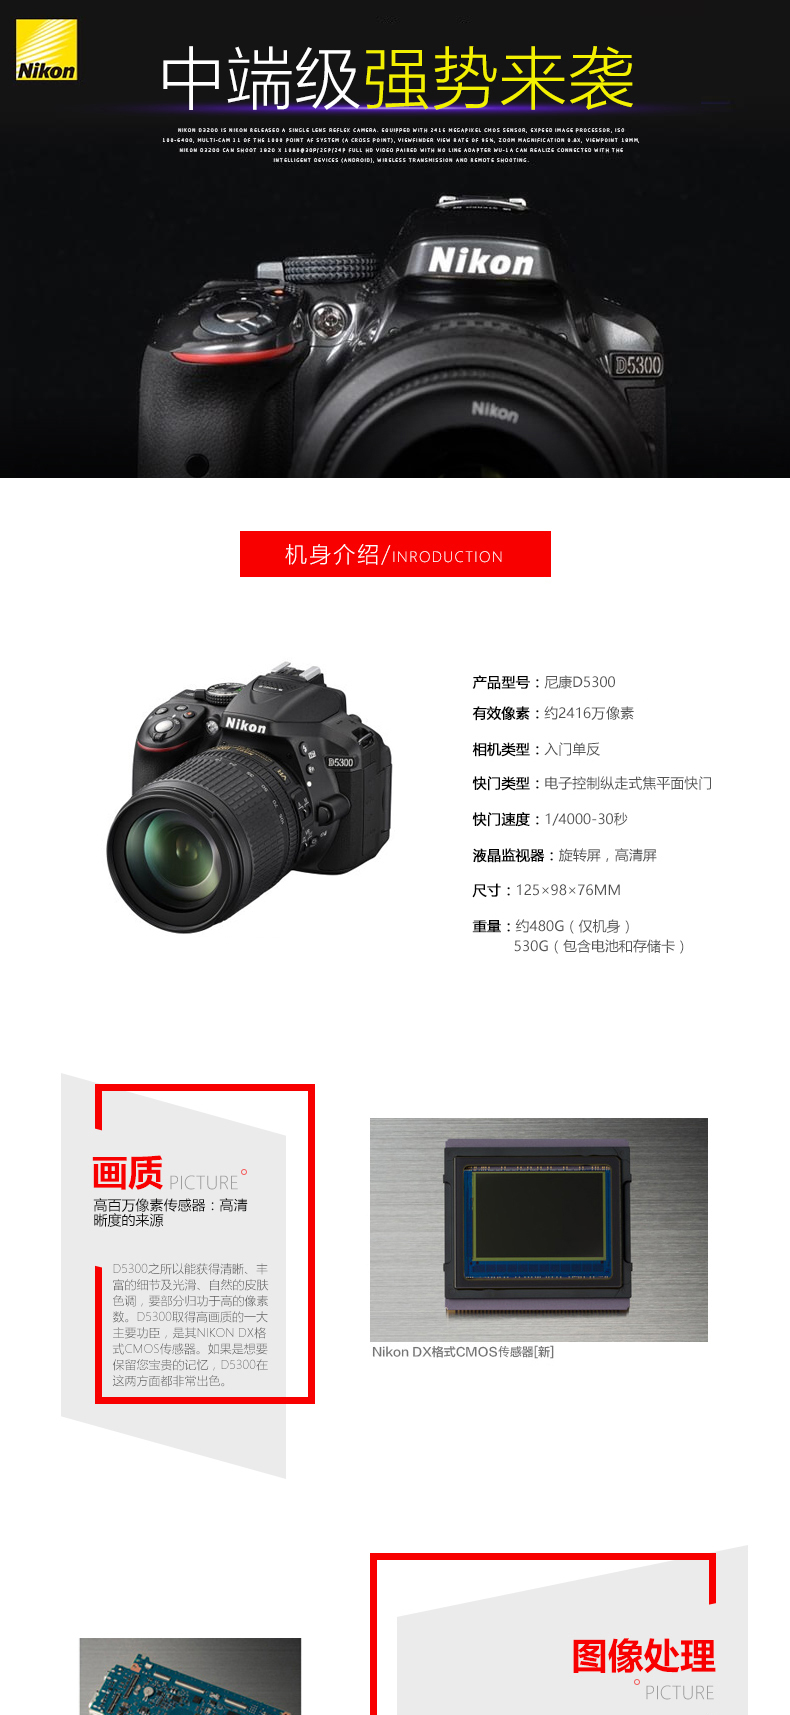 尼康(Nikon) D5300 单机身 不含镜头 2416万像素 翻转屏 WIFI功能 数码单反相机